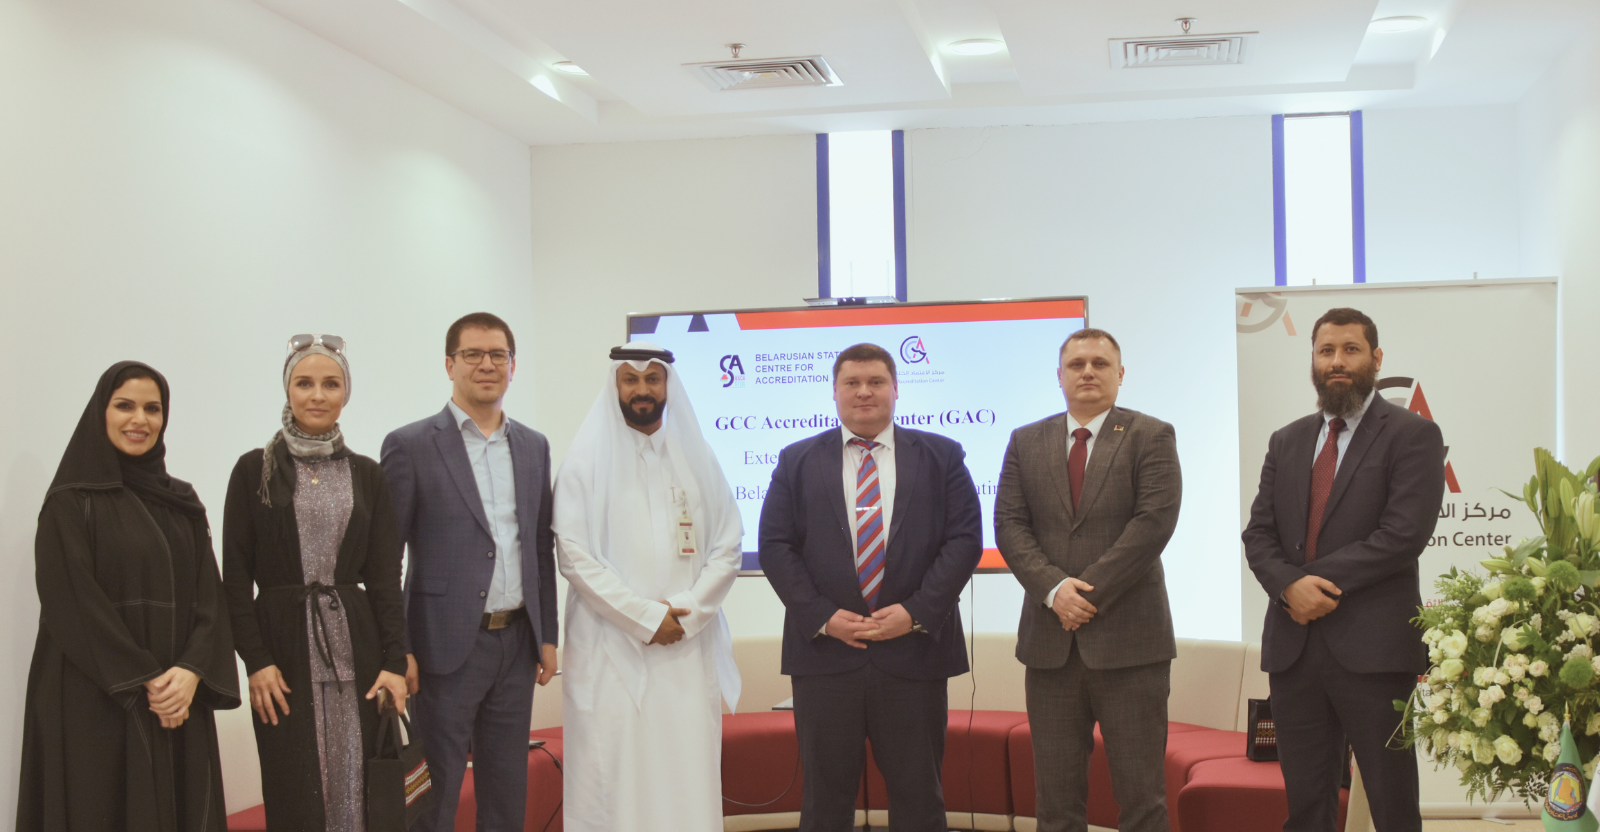 Belarus Delegation Visits GCC Accreditation Center to Bolster Cooperation on Halal Certification